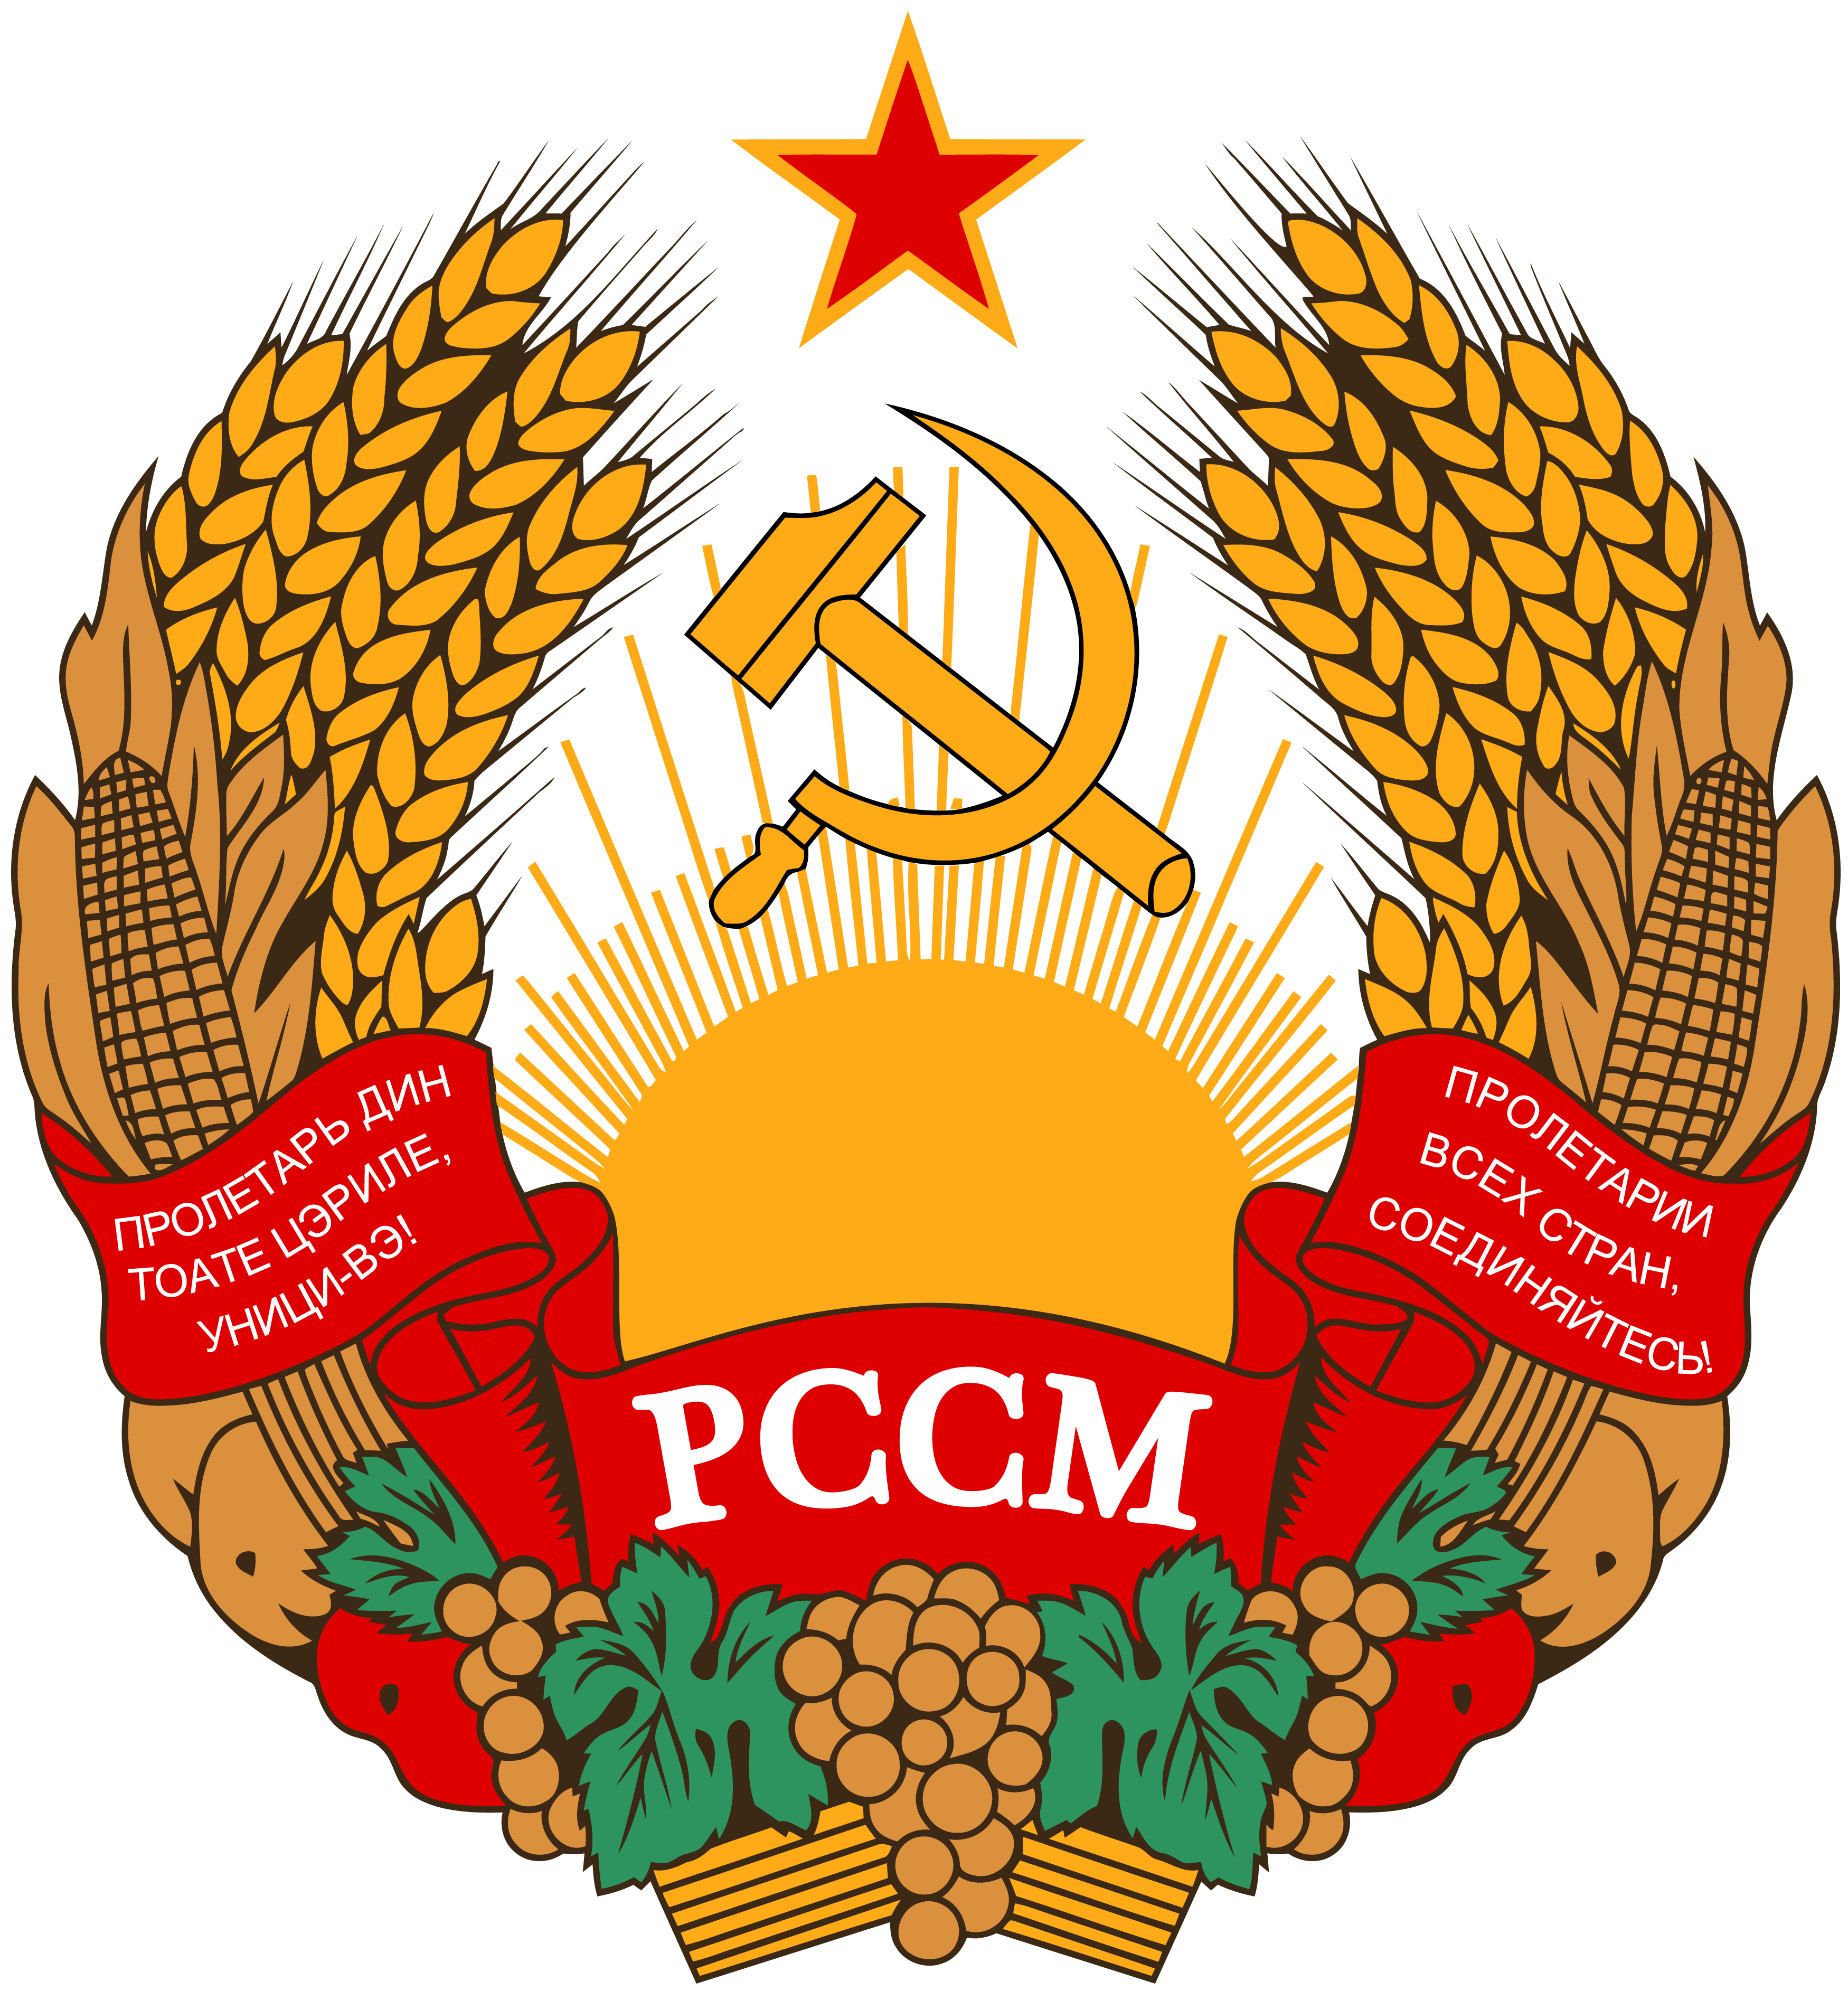 摩爾達維亞蘇聯時期國徽